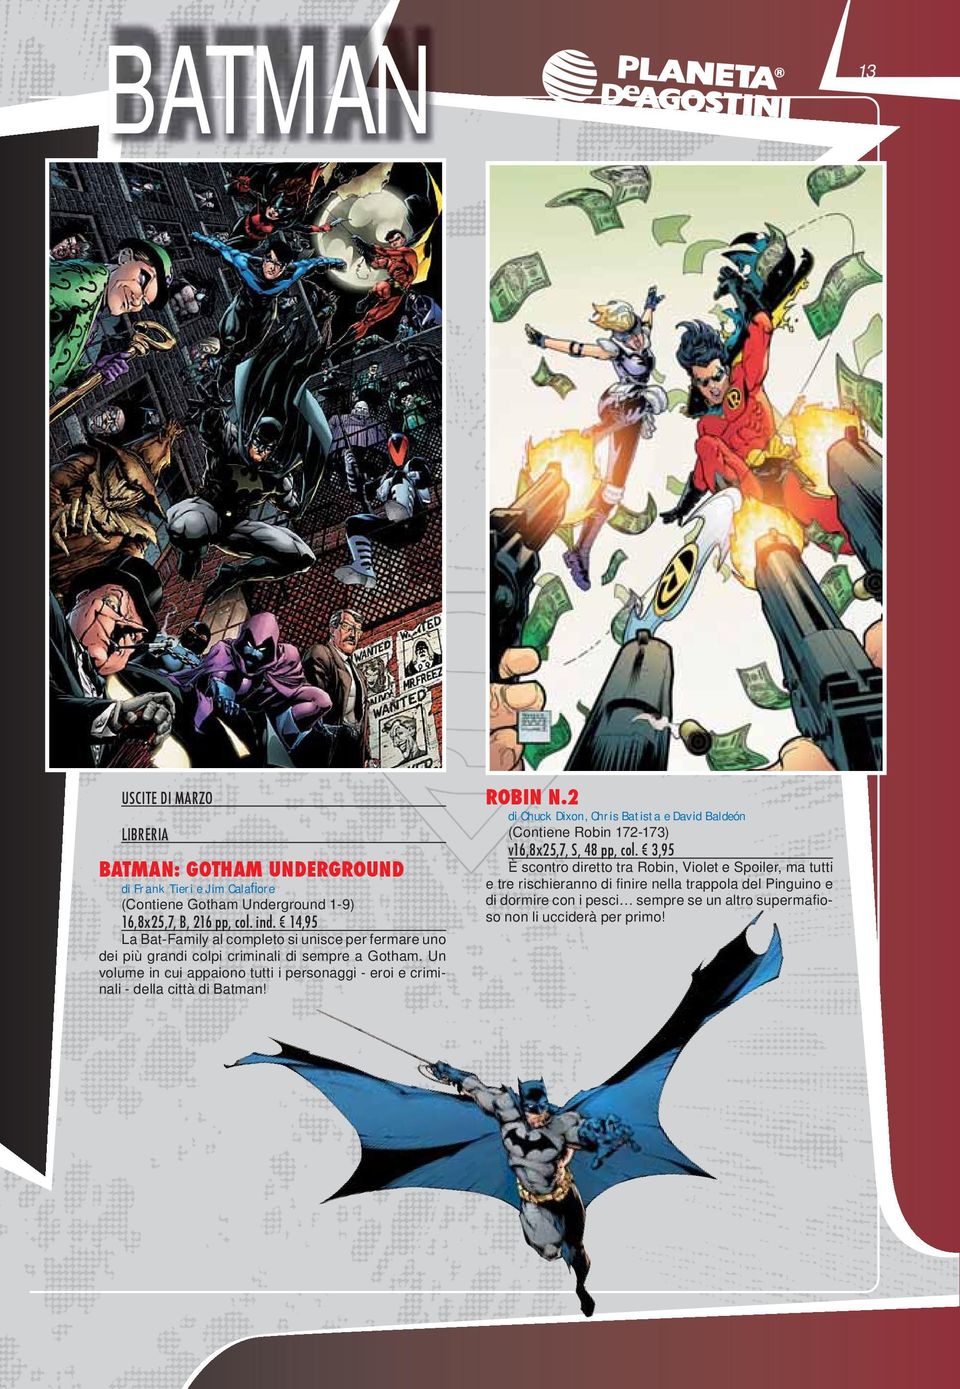 Un volume in cui appaiono tutti i personaggi - eroi e criminali - della città di Batman! ROBIN N.